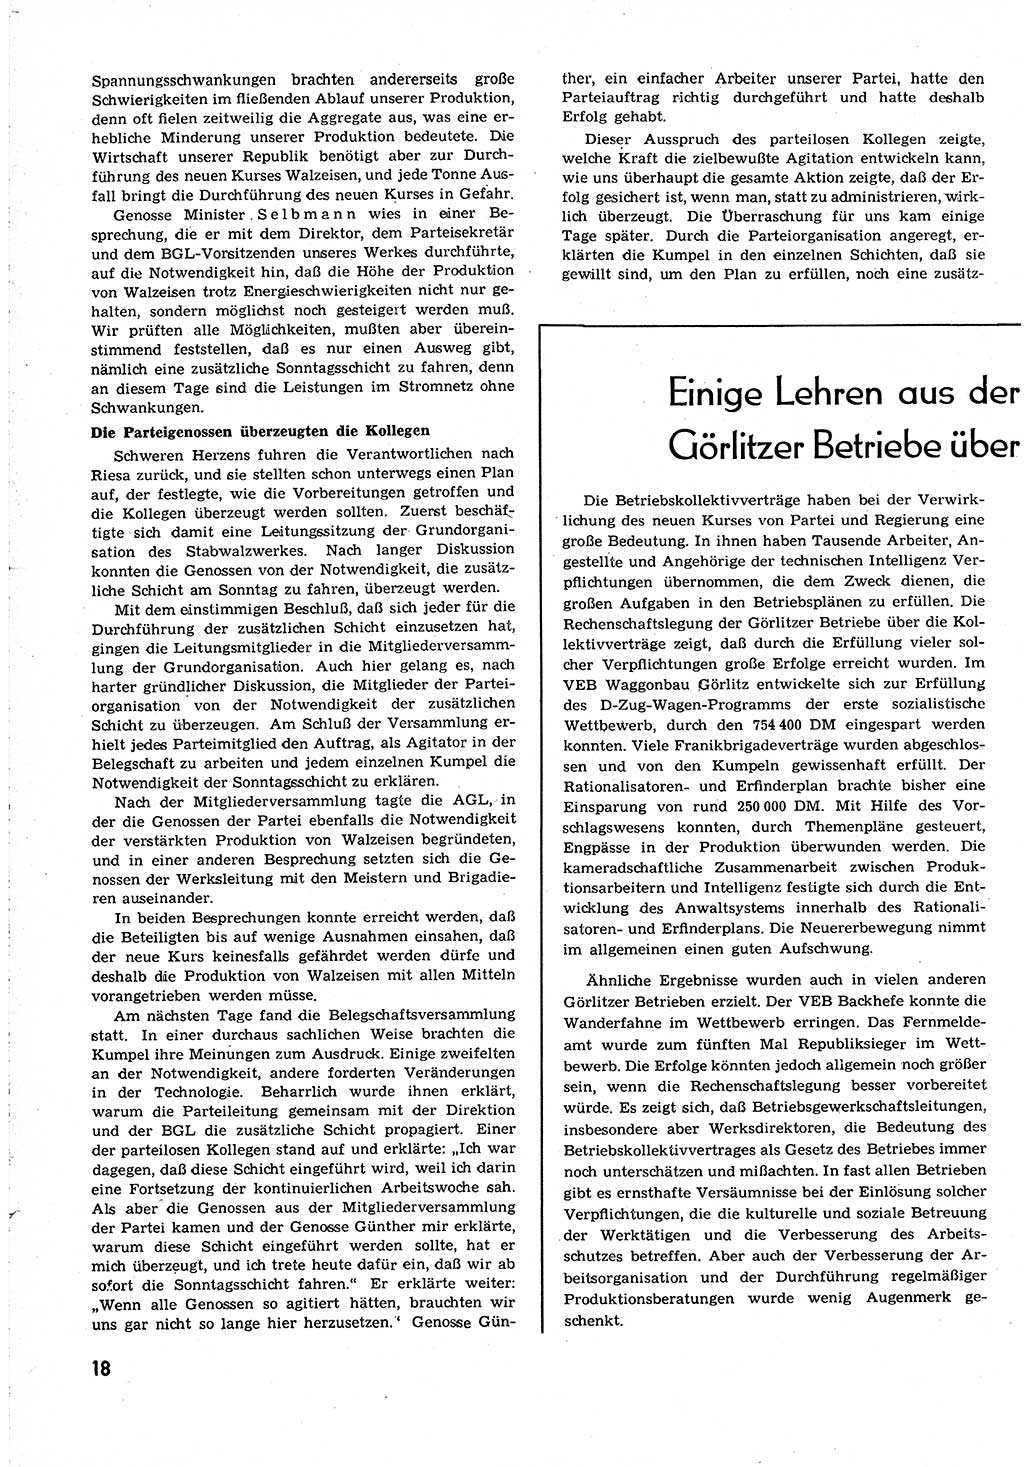 Neuer Weg (NW), Organ des Zentralkomitees (ZK) [Sozialistische Einheitspartei Deutschlands (SED)] für alle Parteiarbeiter, 8. Jahrgang [Deutsche Demokratische Republik (DDR)] 1953, Heft 24/18 (NW ZK SED DDR 1953, H. 24/18)